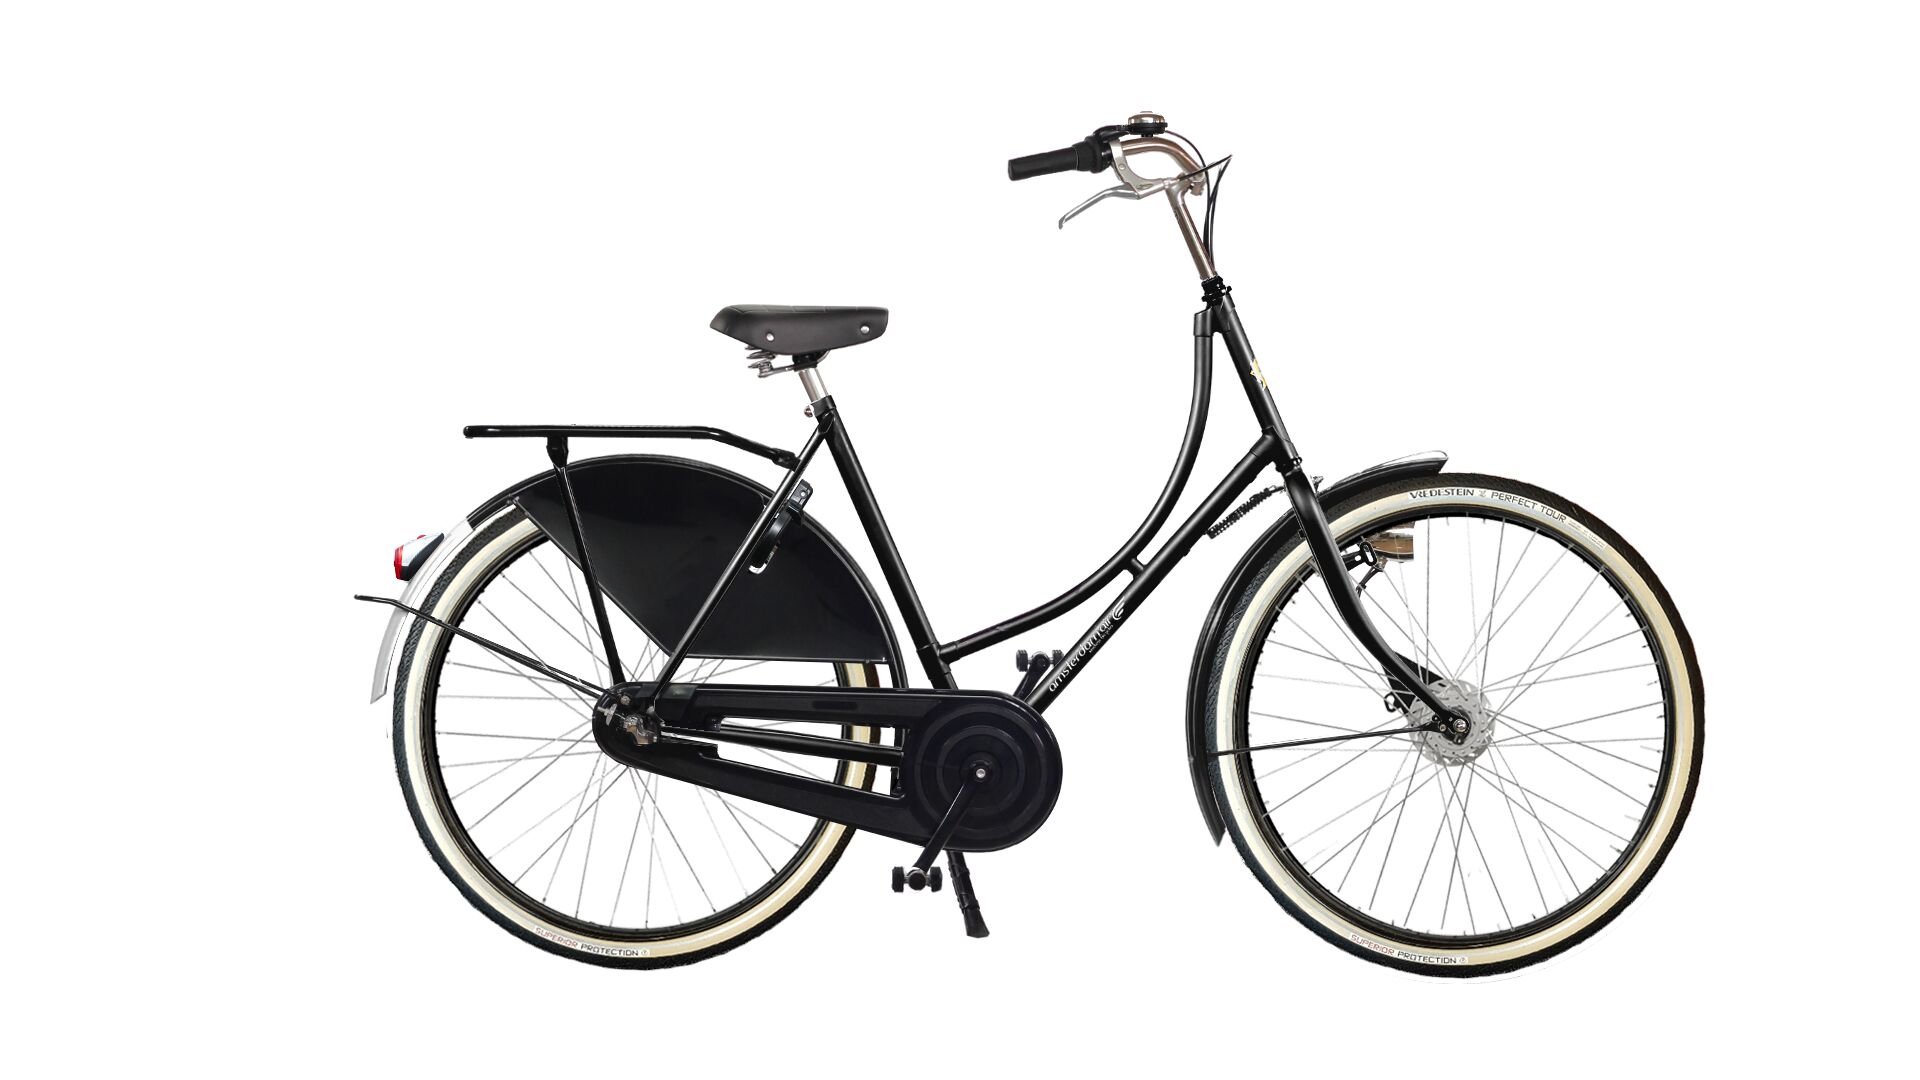 Le vélo hollandais 1881 Premium dans sa configuration de base